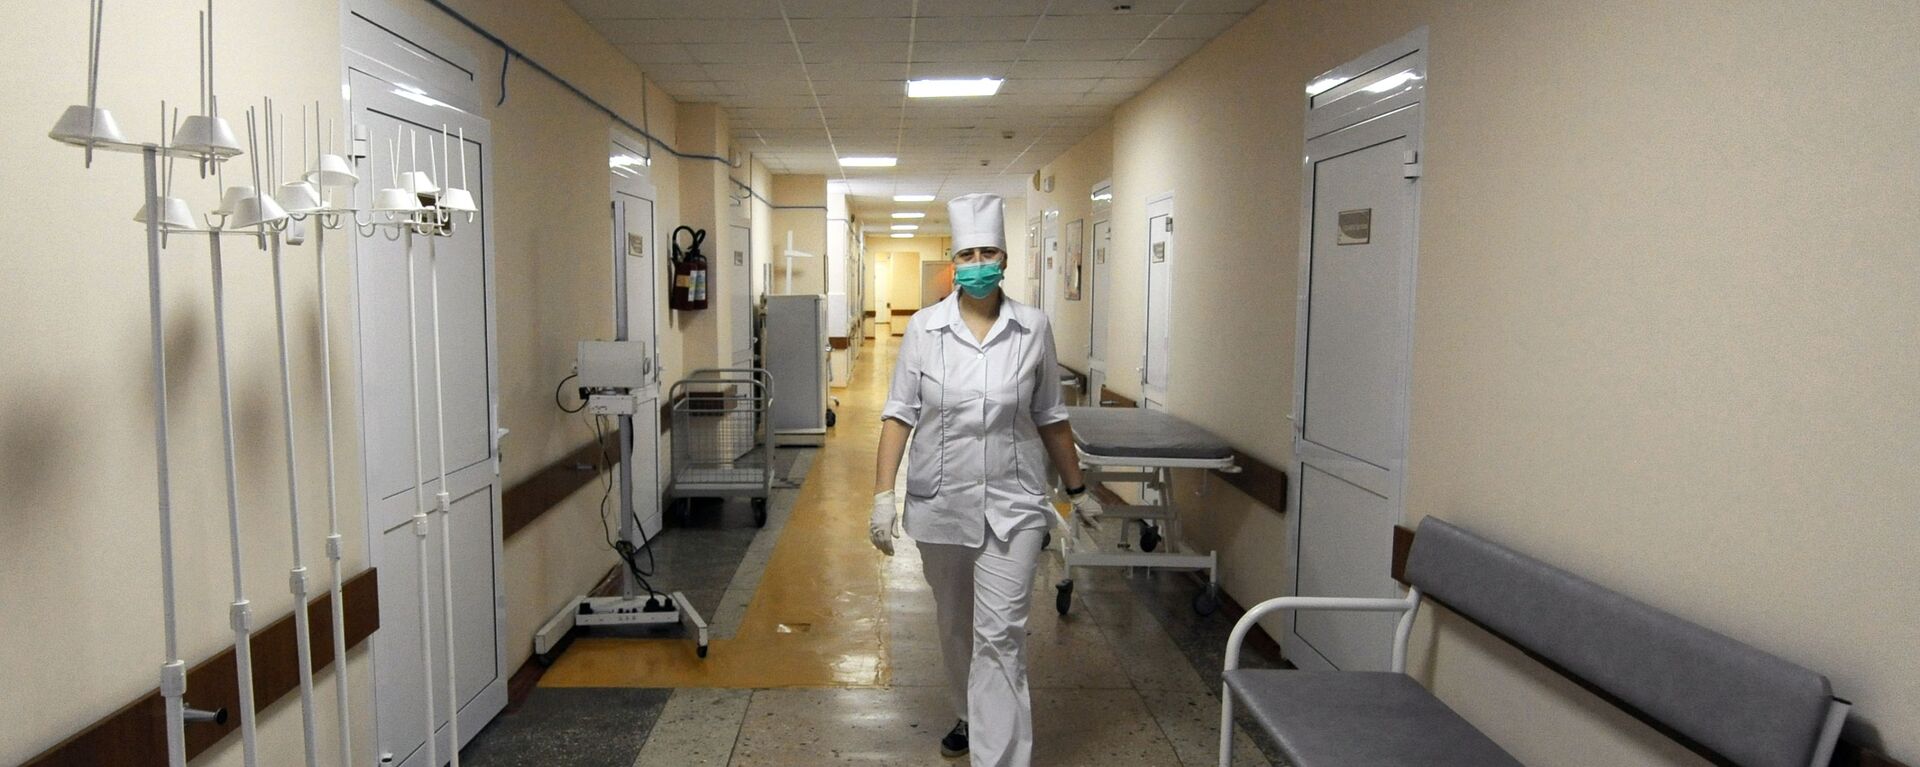 Медсестра идет по коридору в больнице - Sputnik Беларусь, 1920, 23.03.2021